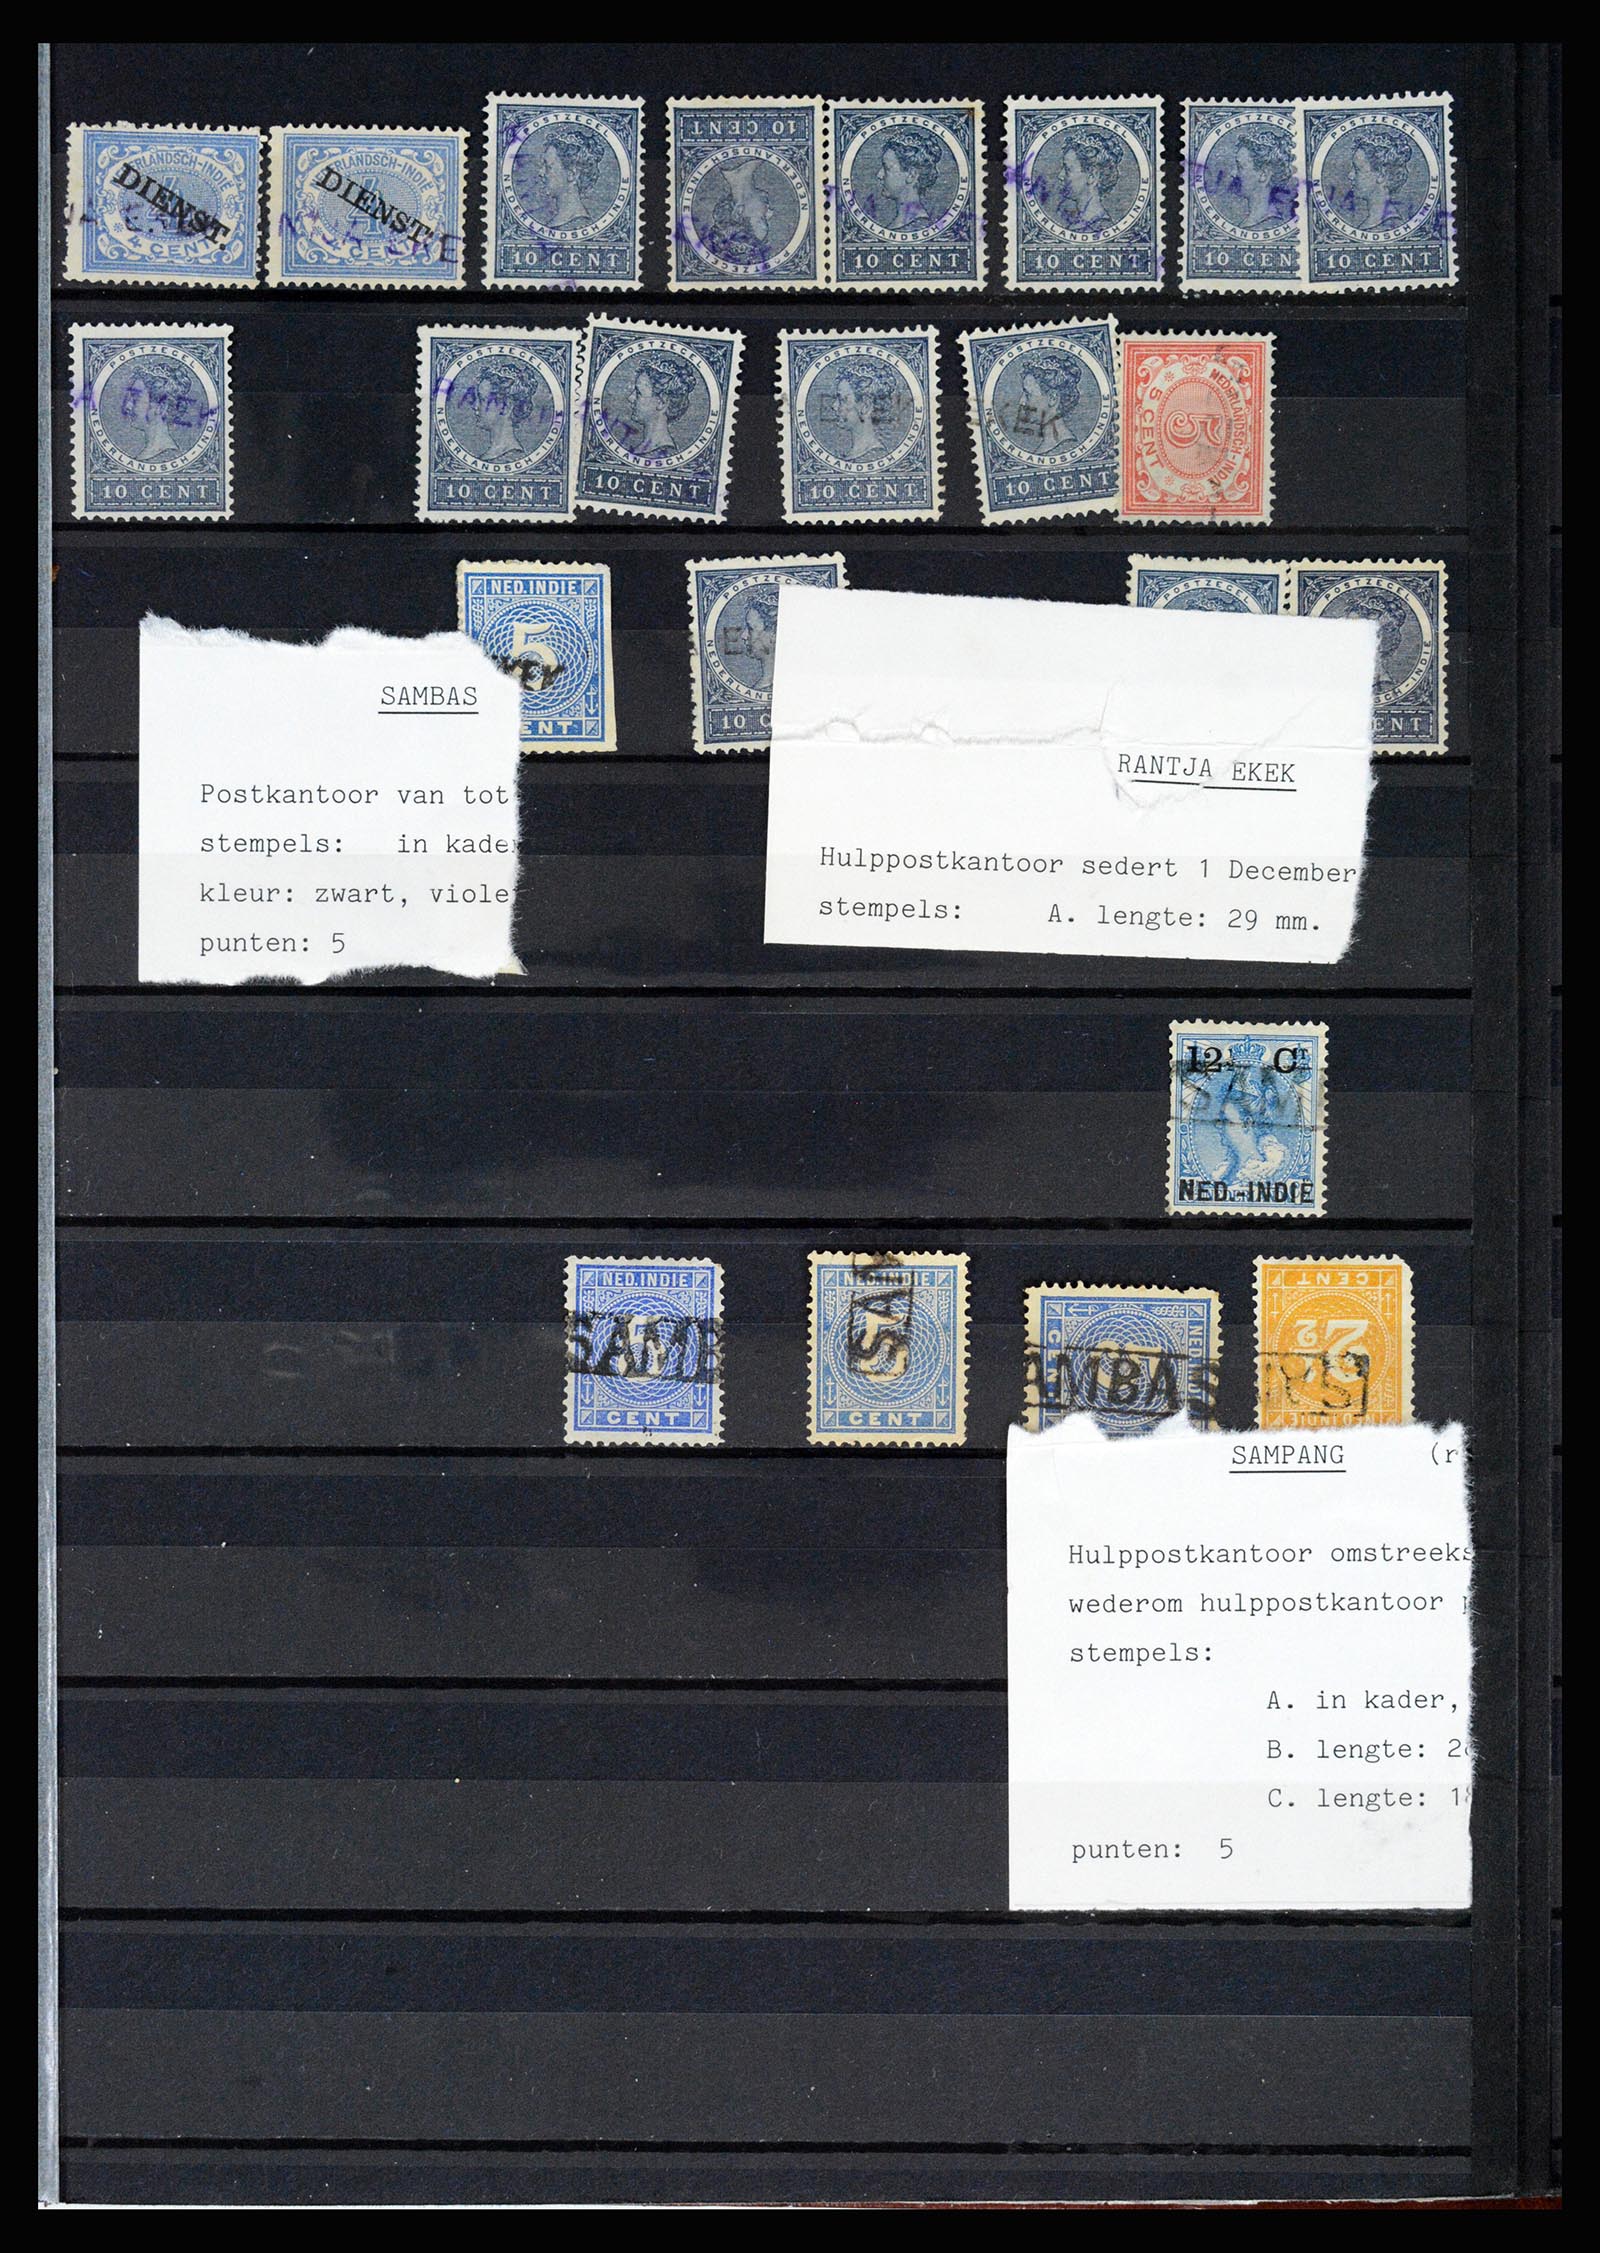 36512 061 - Stamp collection 36512 Nederlands Indië stempels 1872-1930.